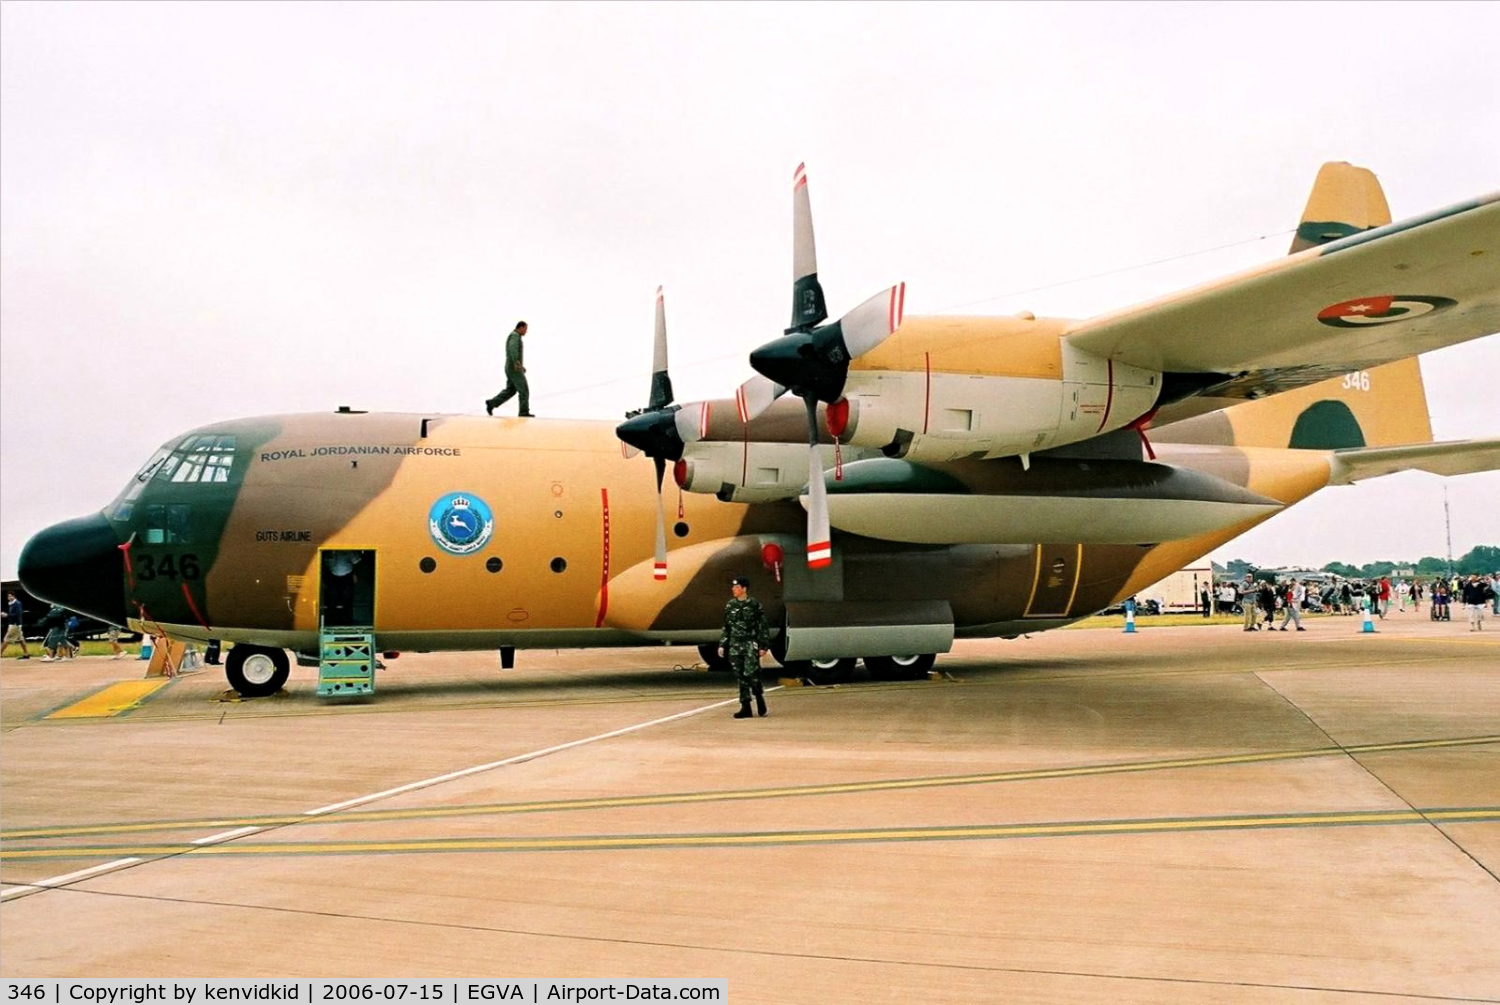 346, Lockheed C-130H Hercules C/N 382-4920, Royal Jordanian Air Force on static display at RIAT.